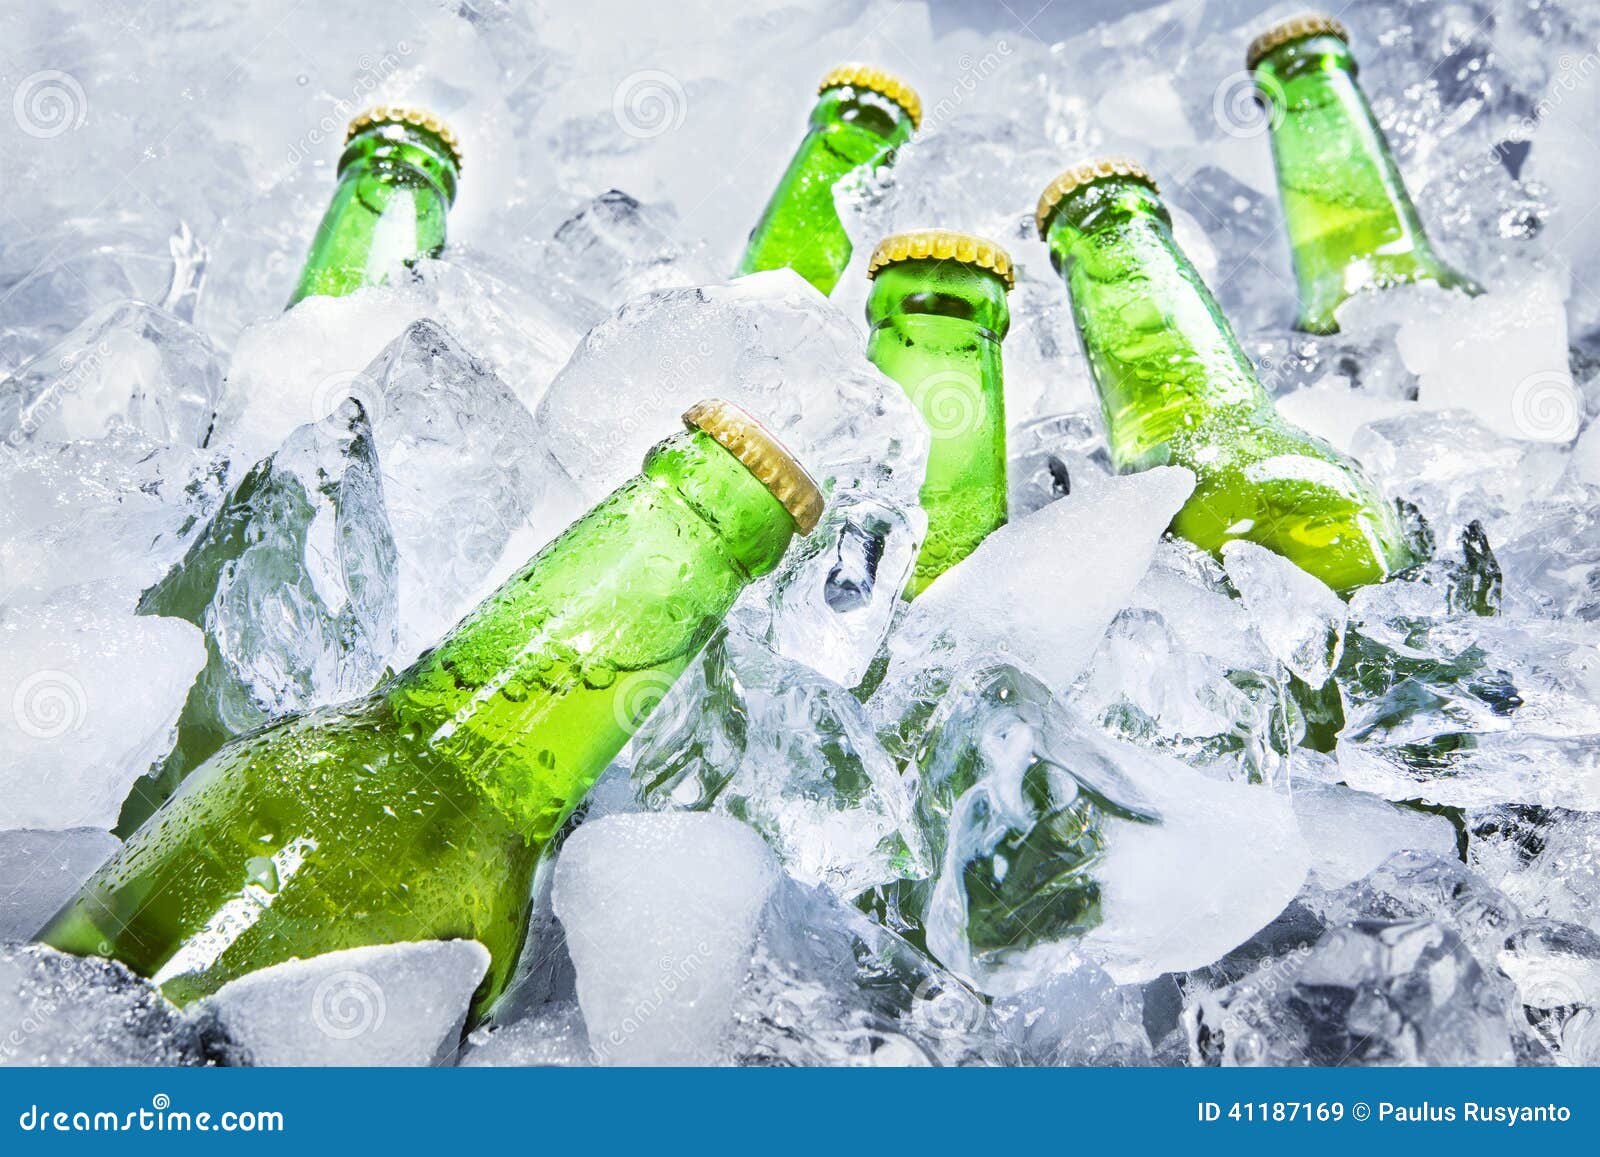 Gelo na cerveja? Invenção de mineiro resfria instantaneamente a bebida -  Degusta - Estado de Minas